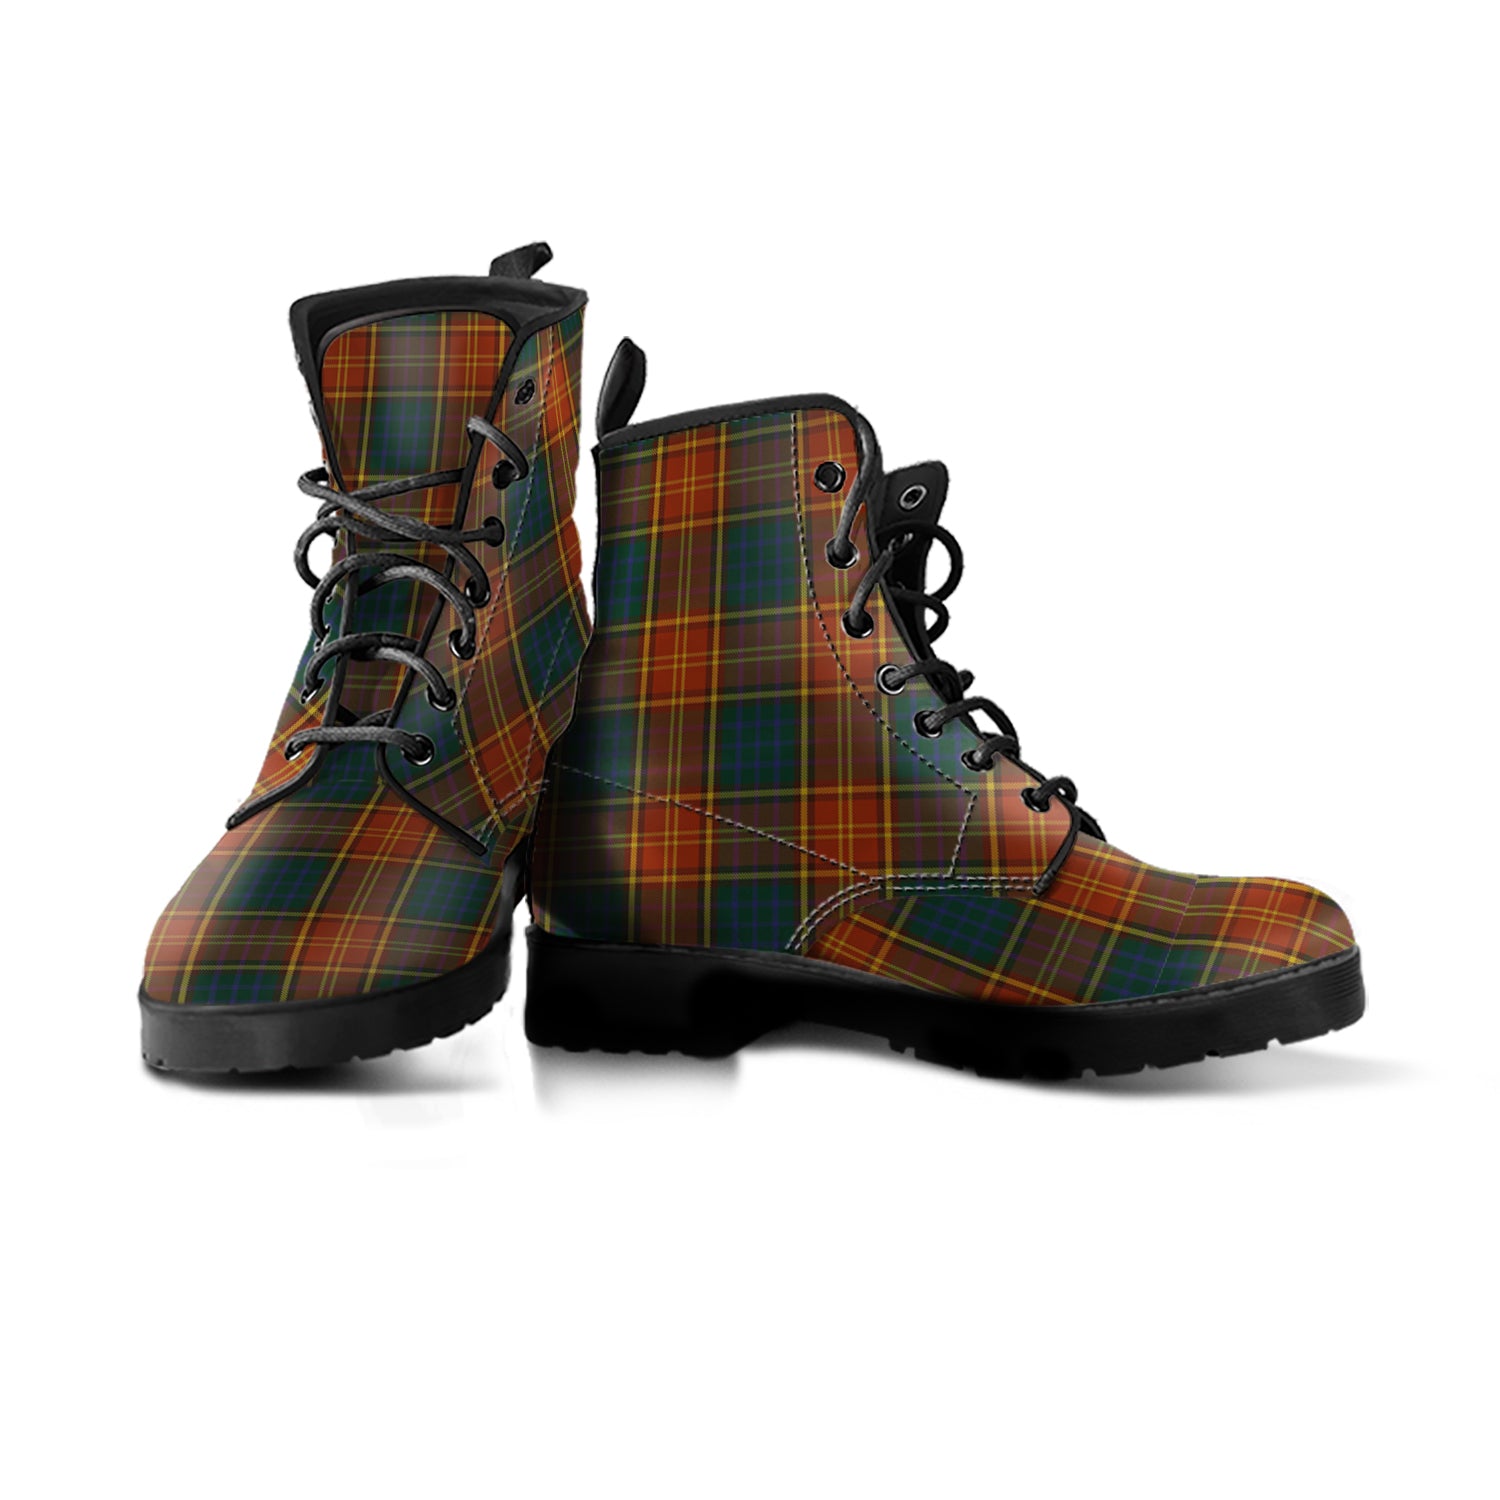 roscommon-tartan-leather-boots